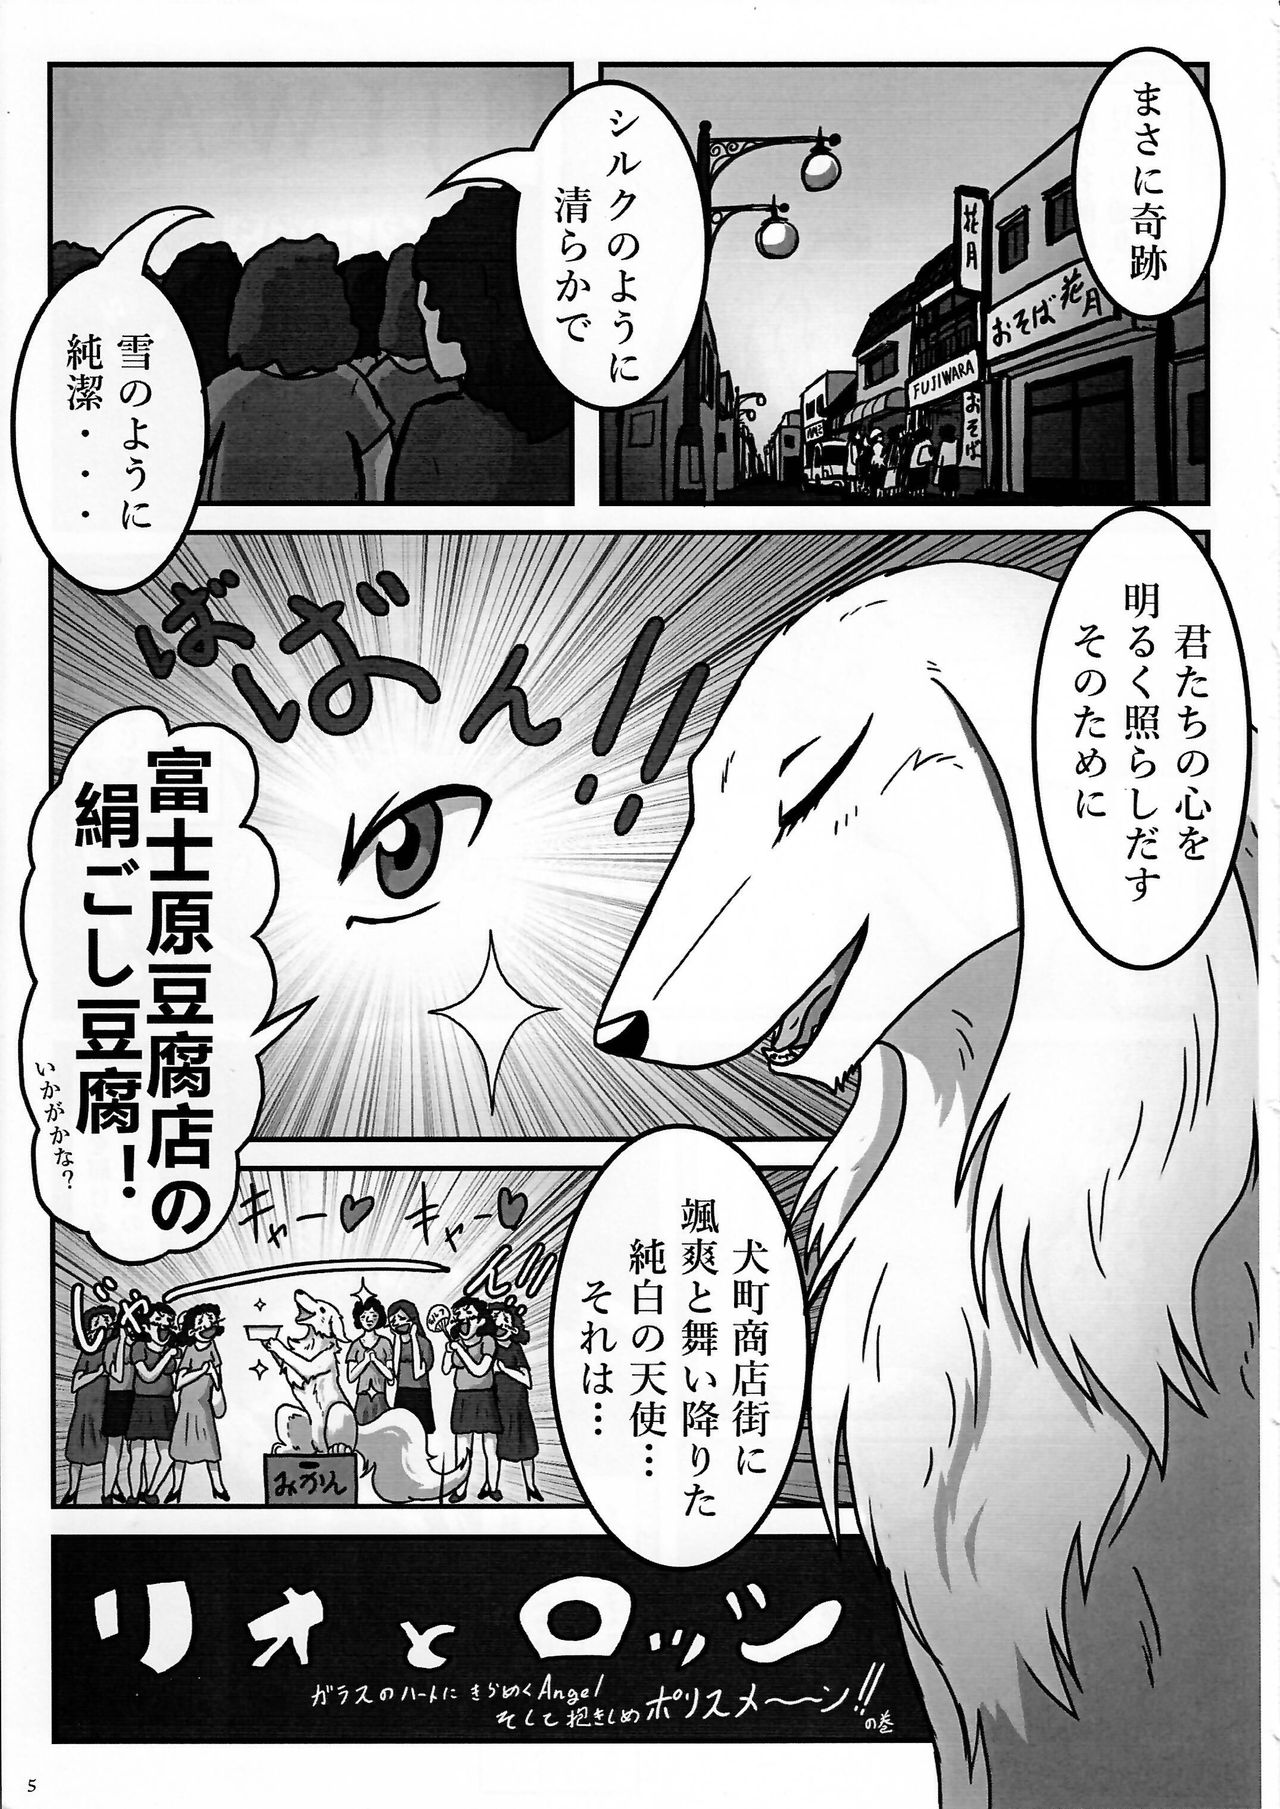 (Kansai! Kemoket 3) [KTQ48 (Various)] KTQ 7 page 5 full